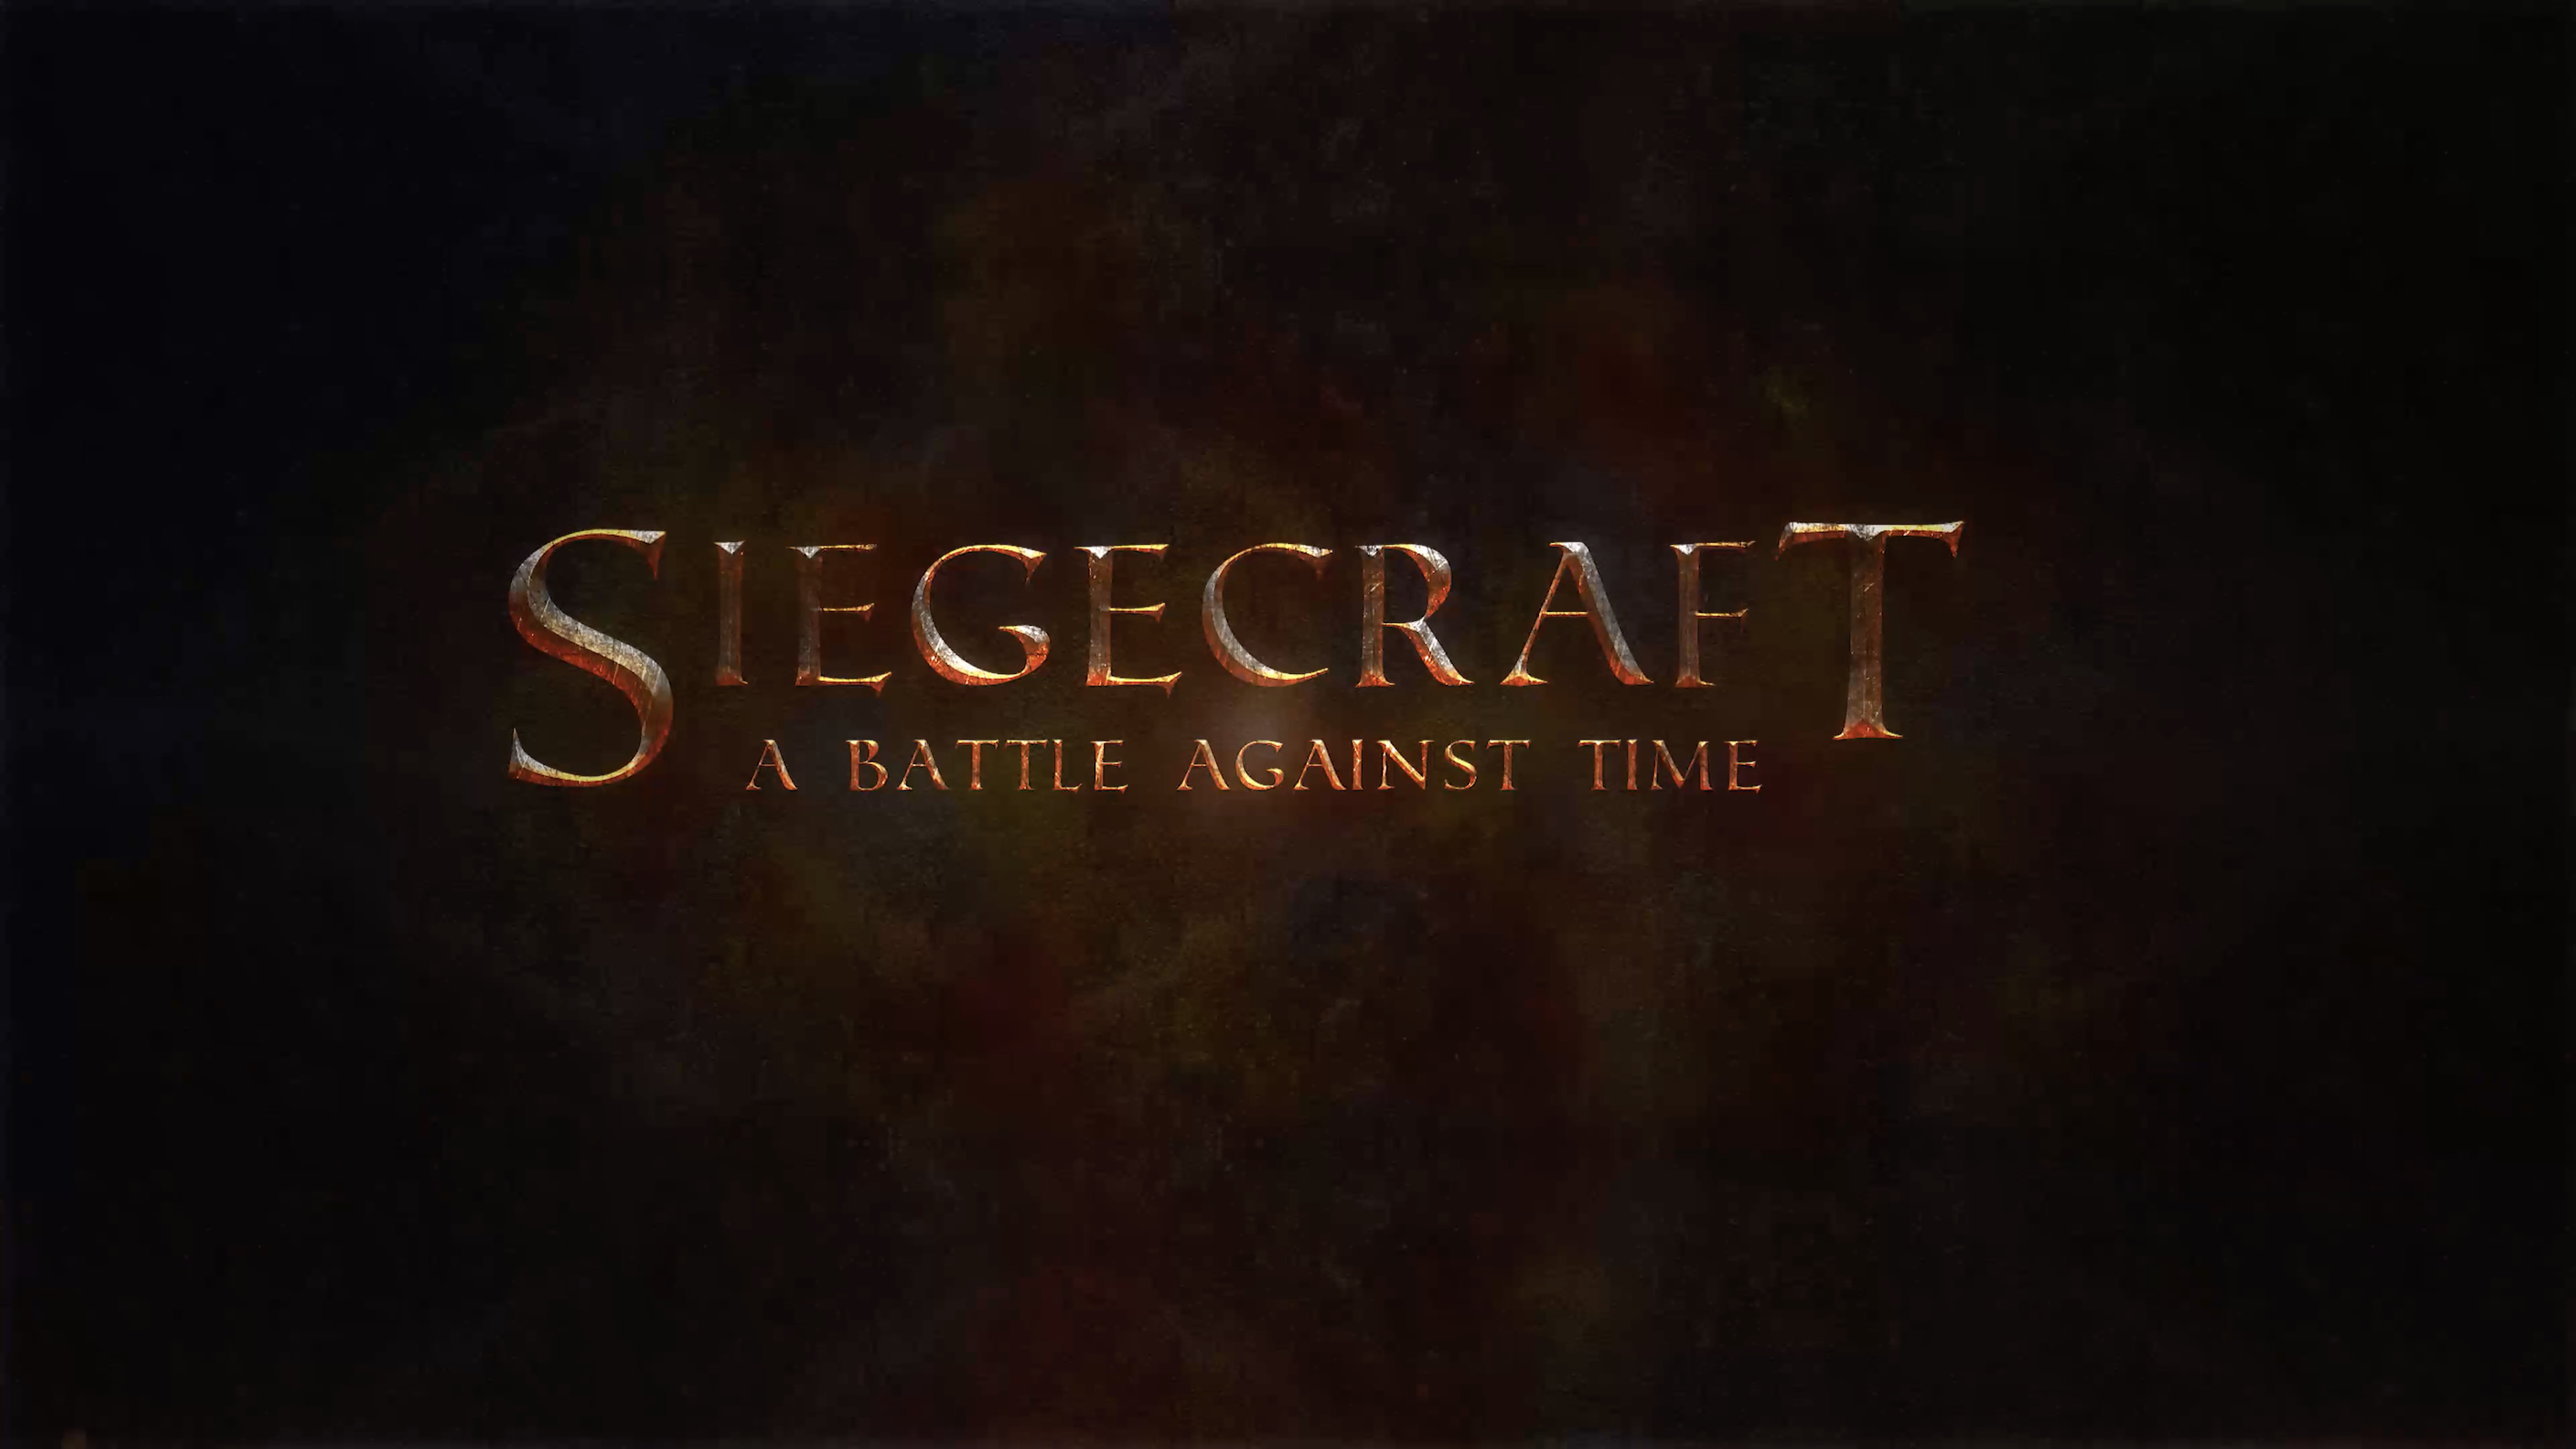 Siegecraft Trailer (PC Game)